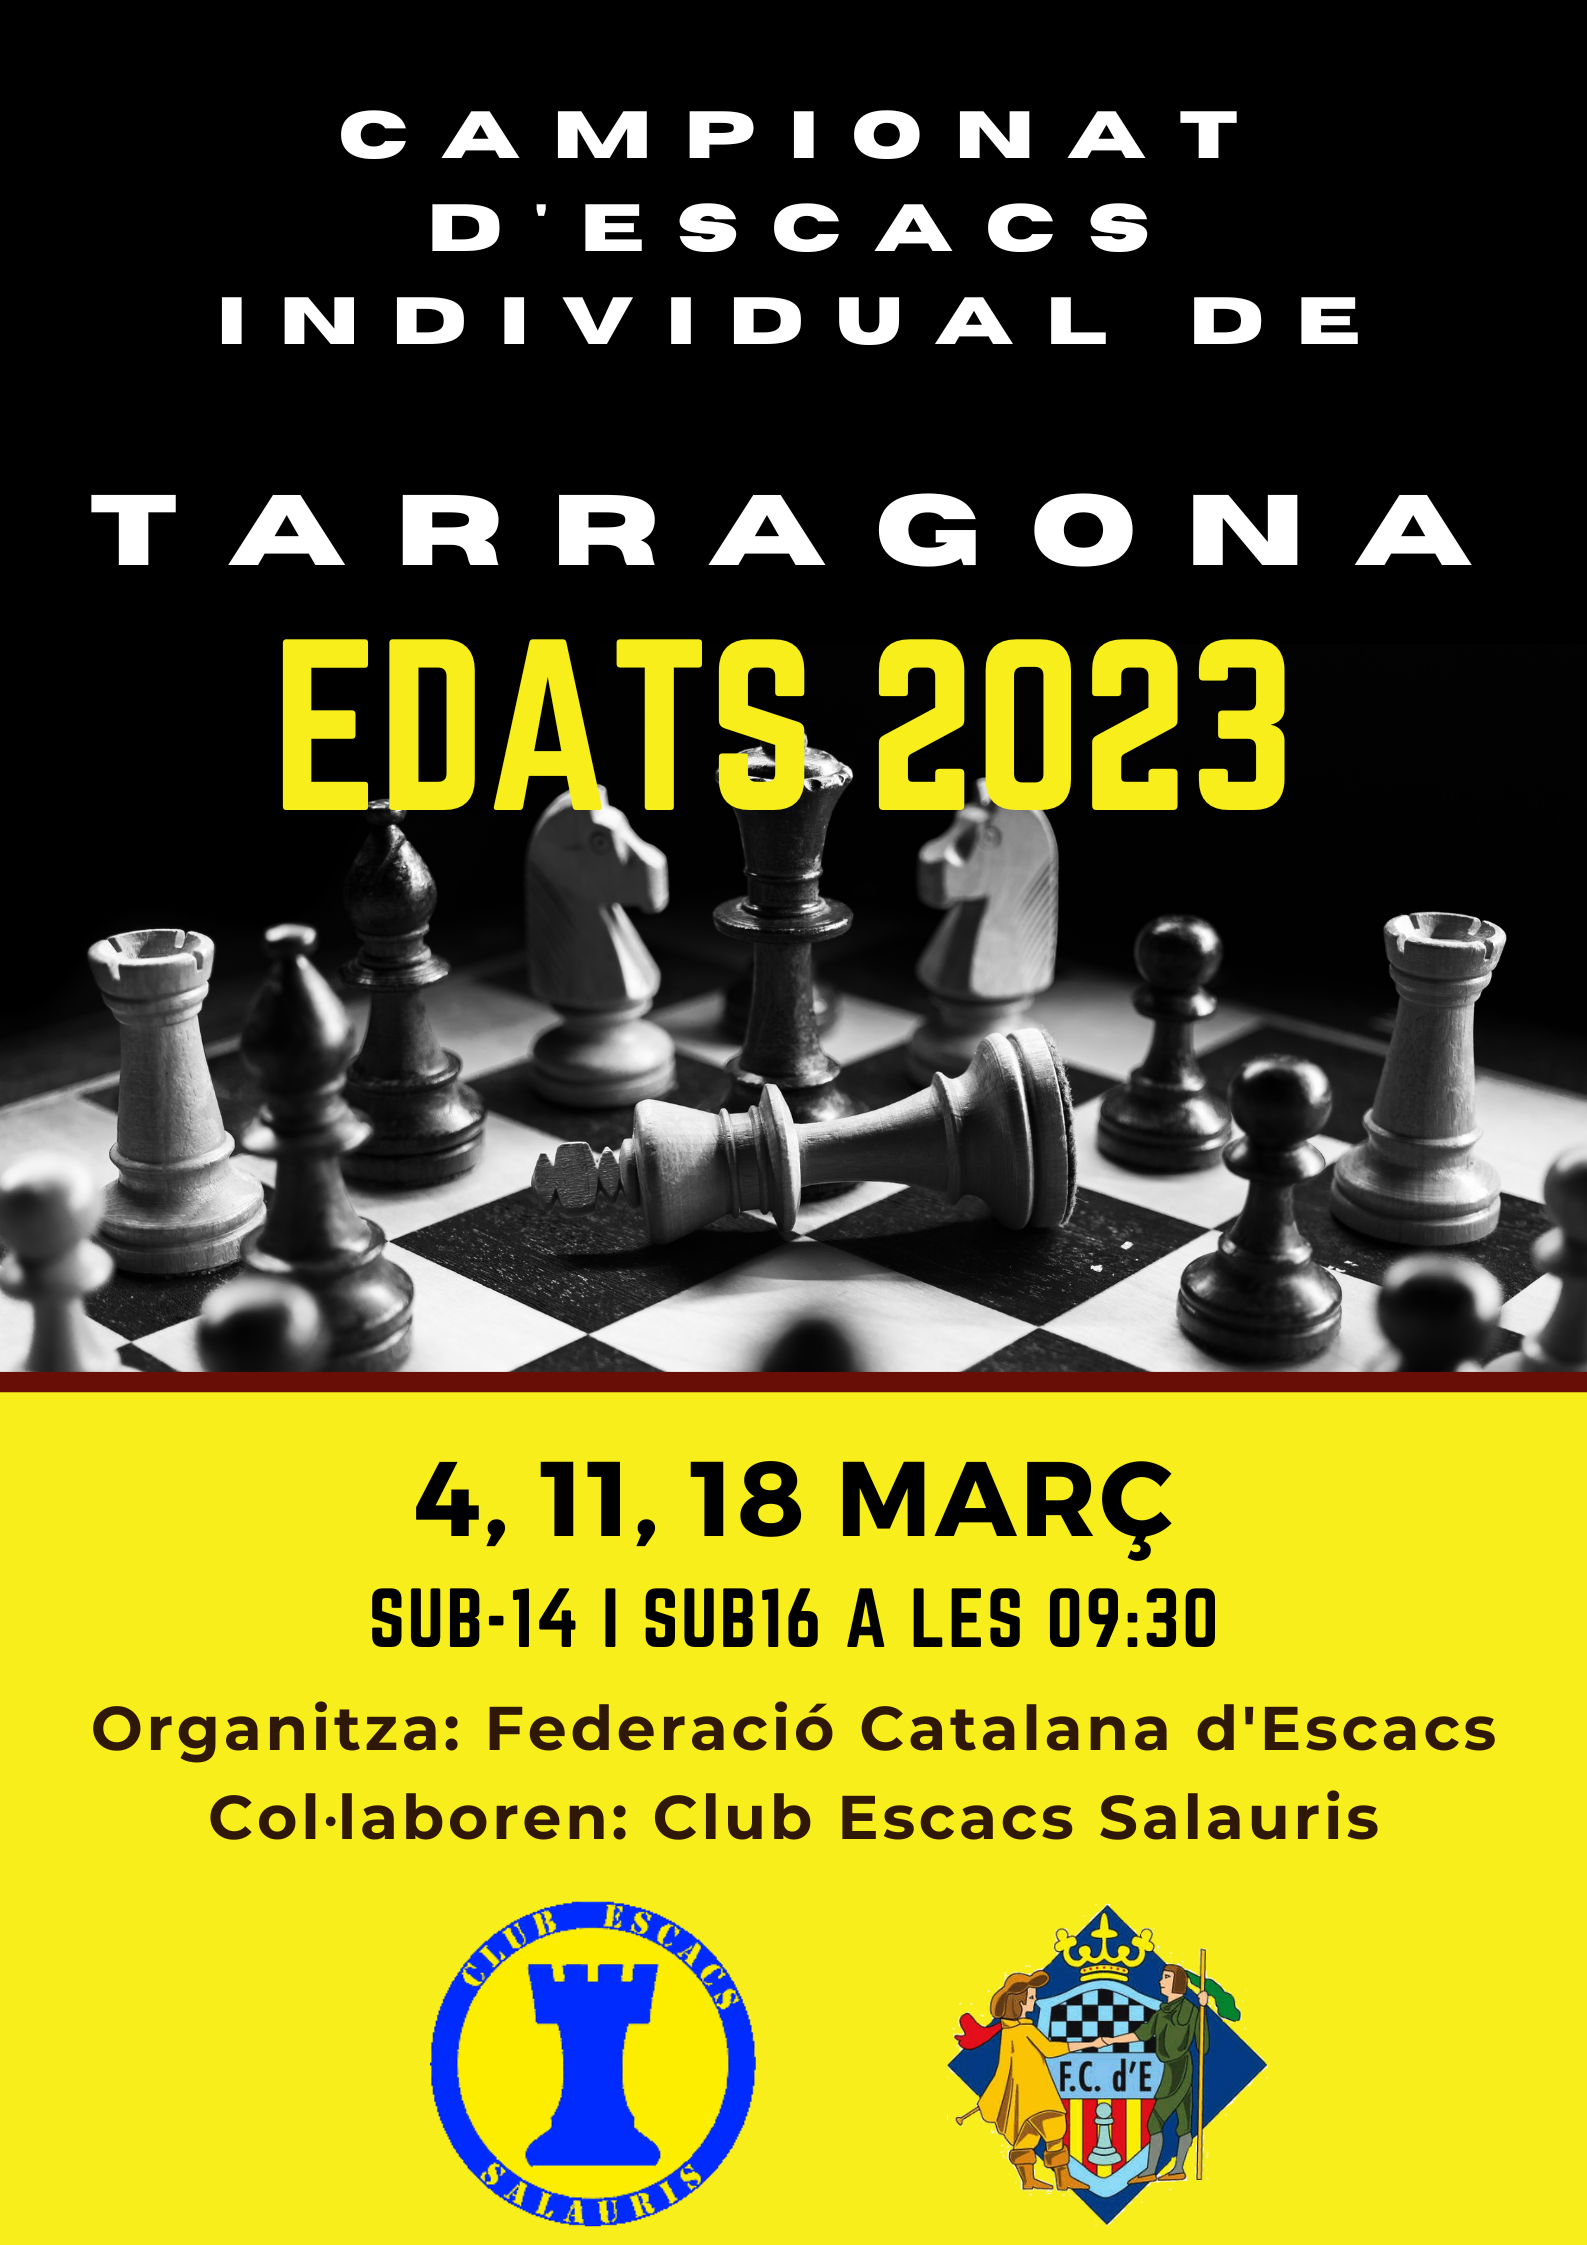 Campionat Edats Tarragona